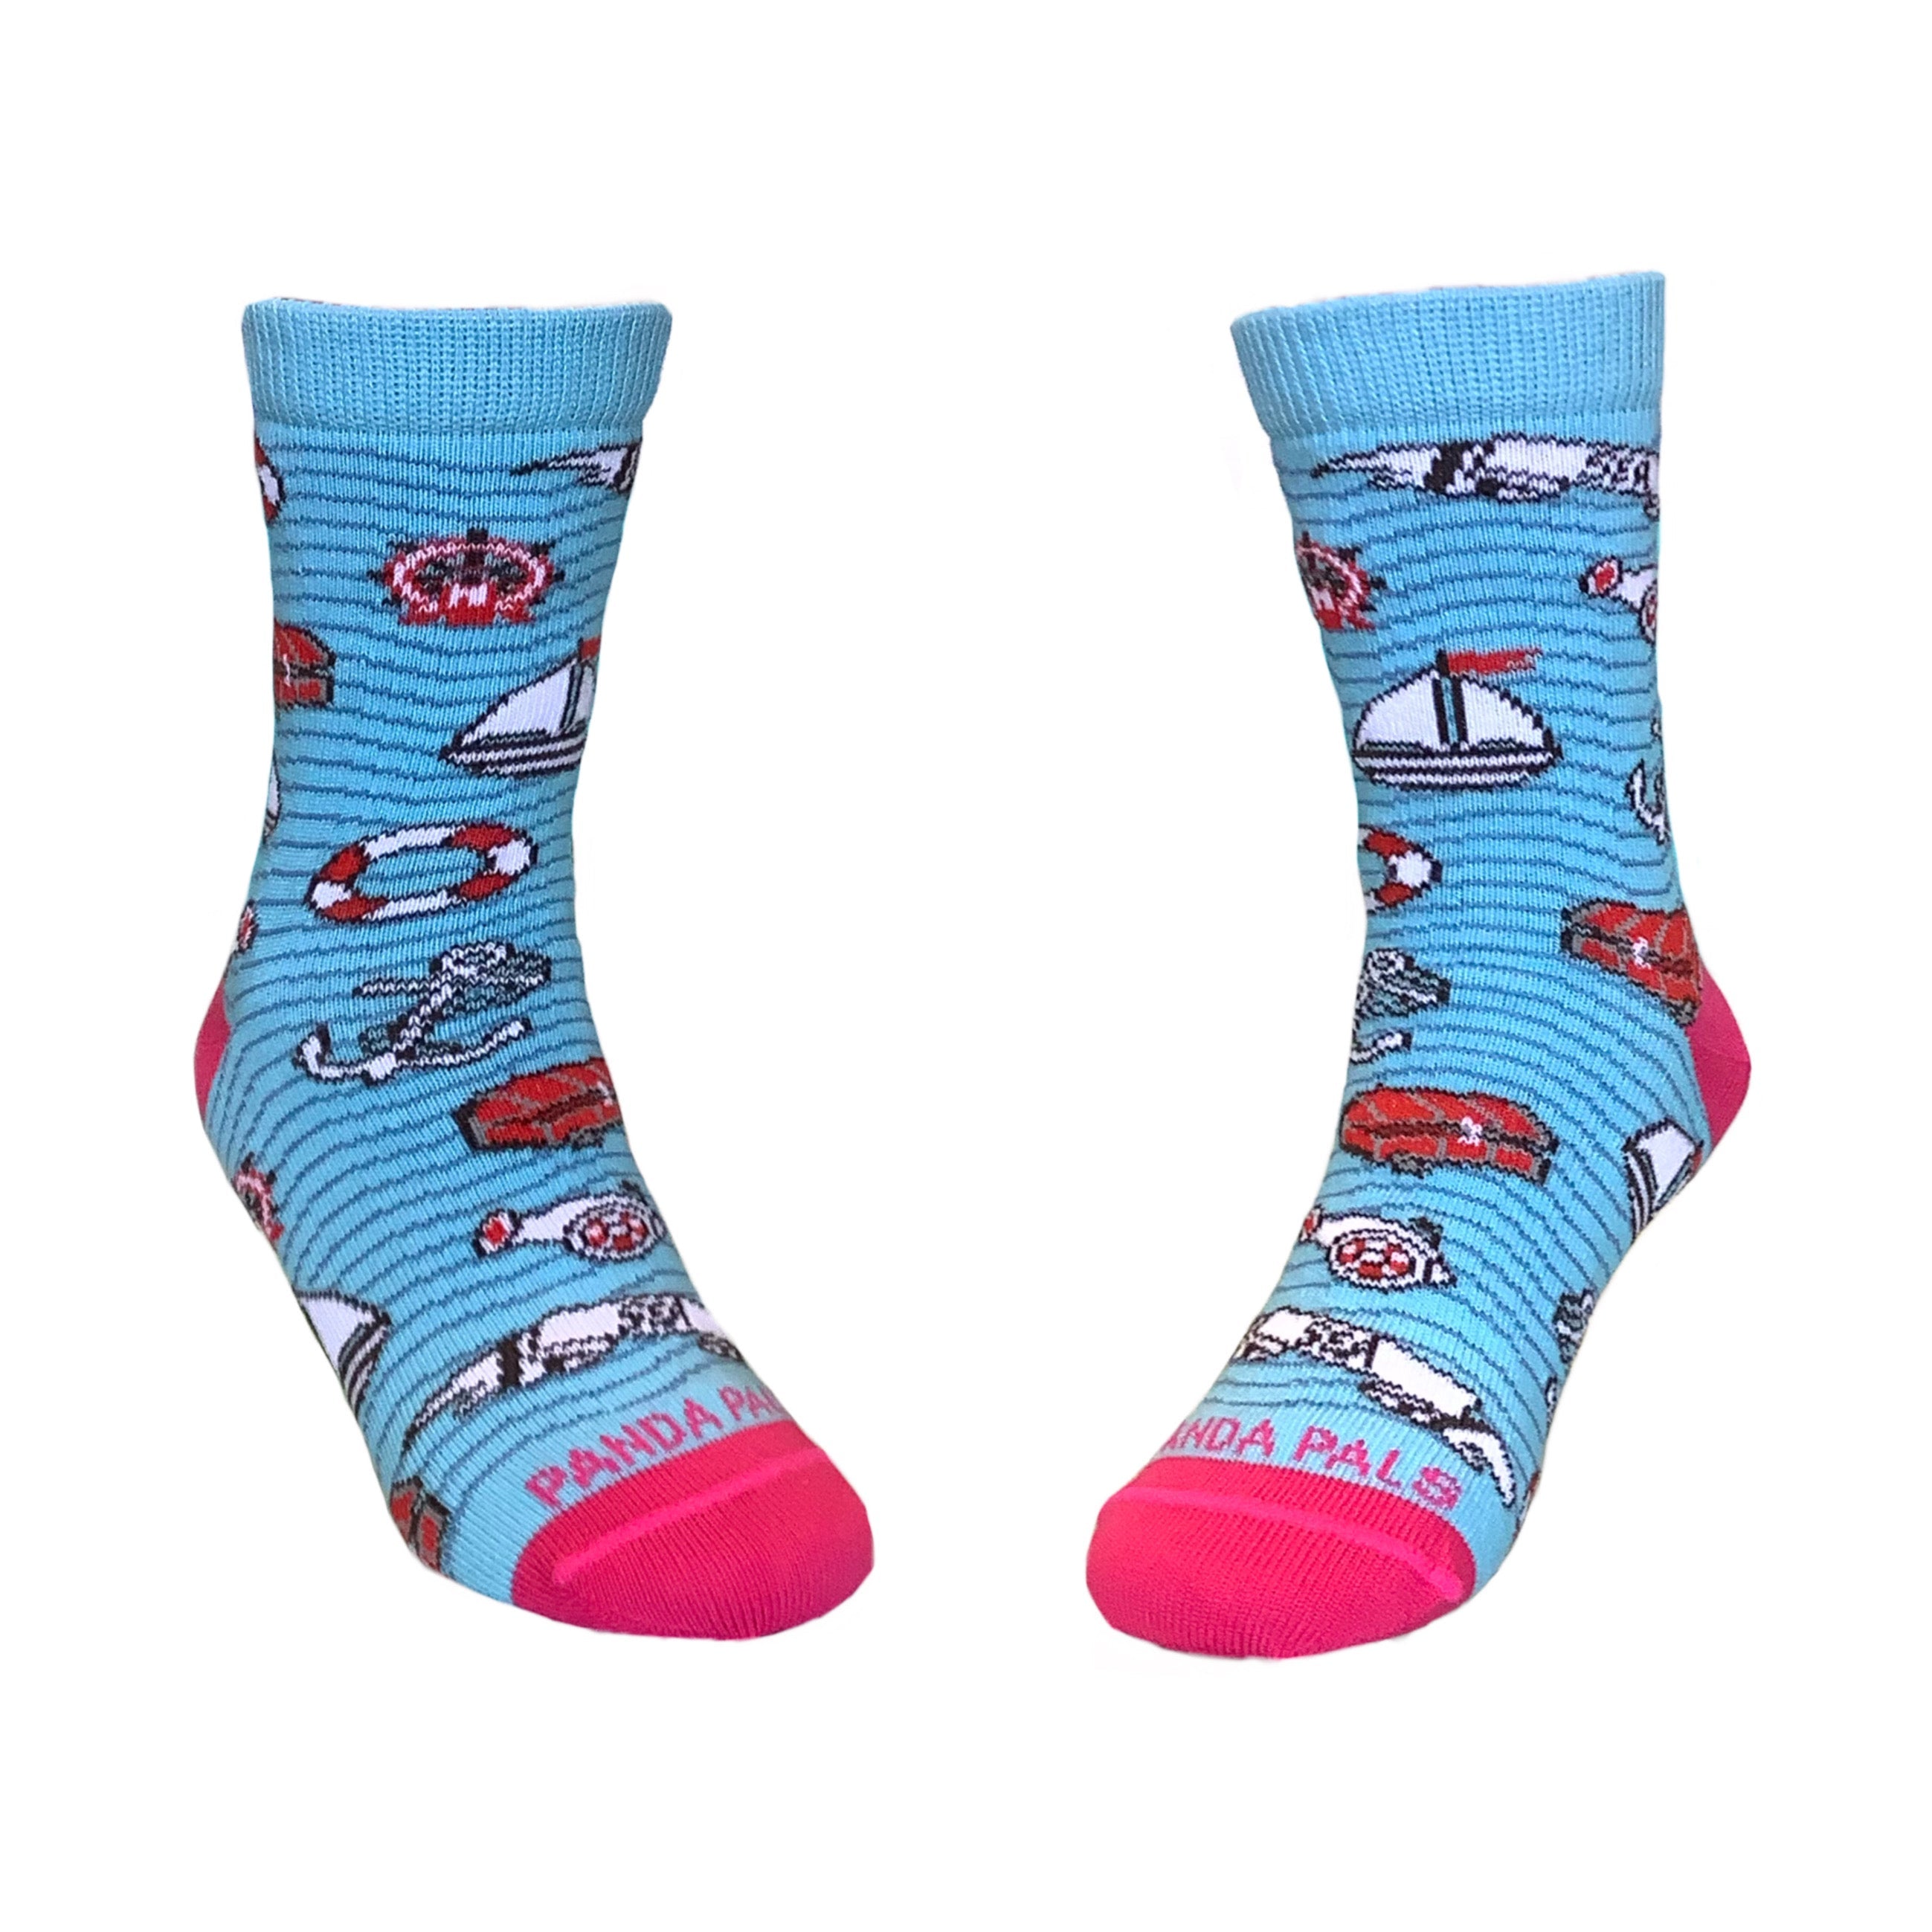 Sea Adventure Socks (Two Colors) - Kids Socks (Ages 3-7)